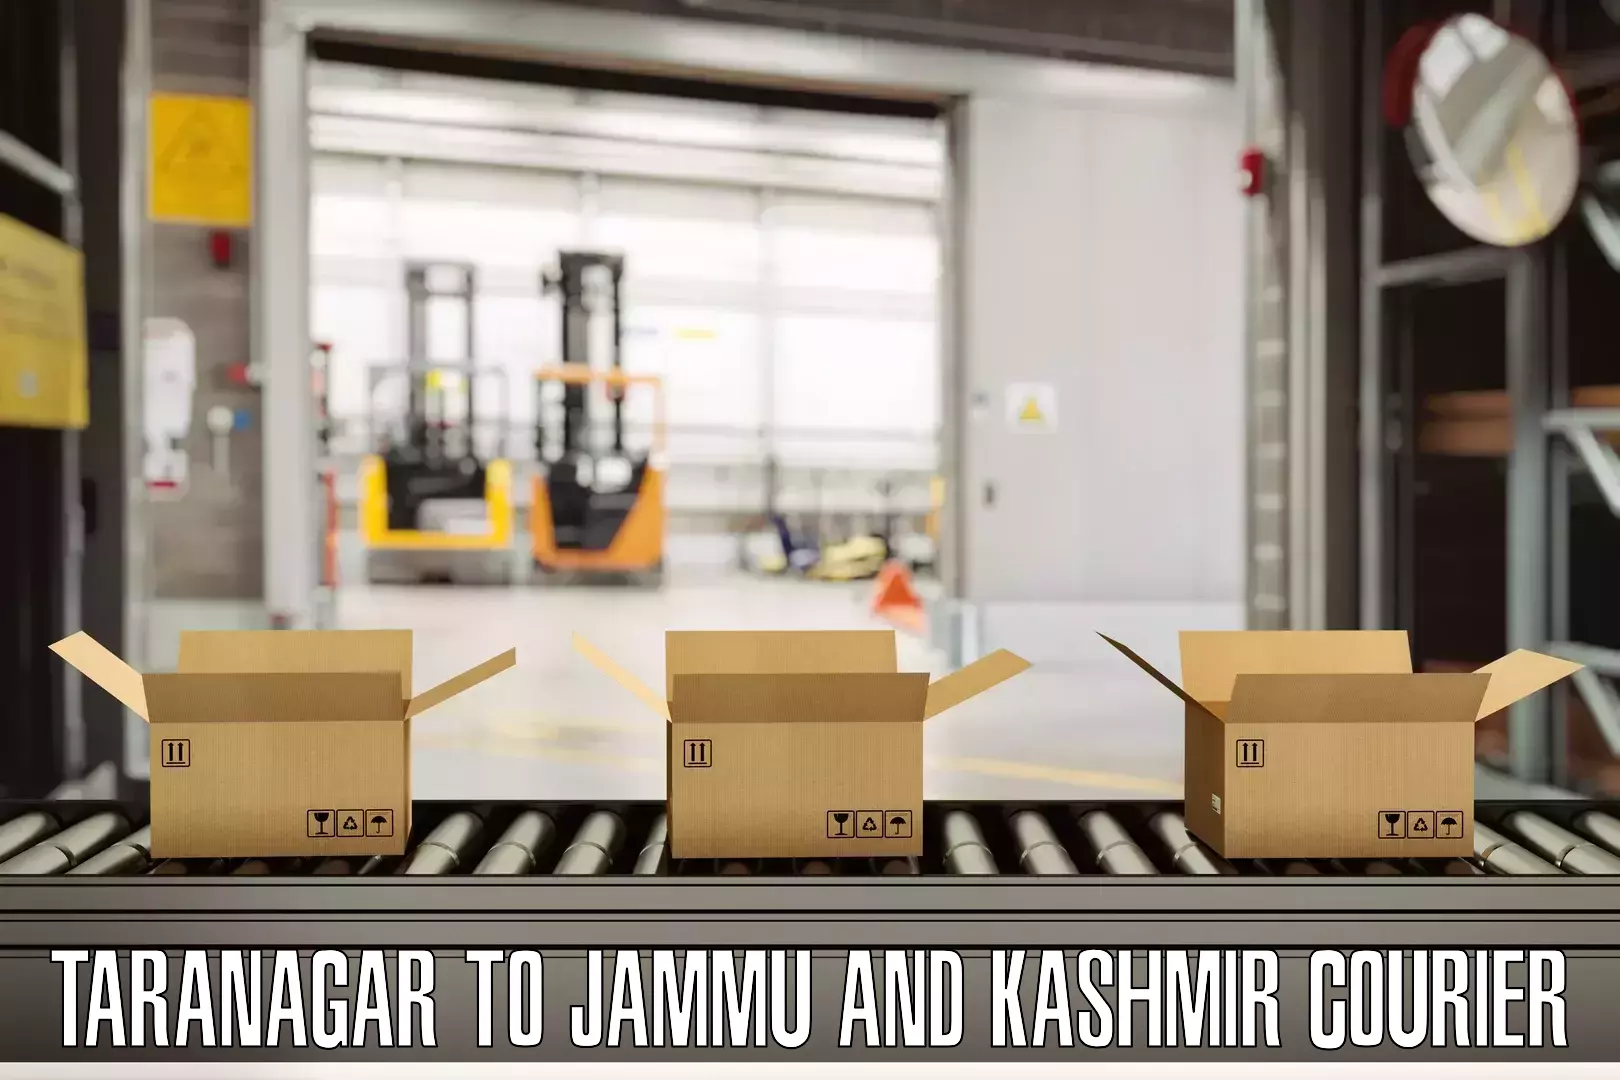 Baggage shipping advice Taranagar to Srinagar Kashmir